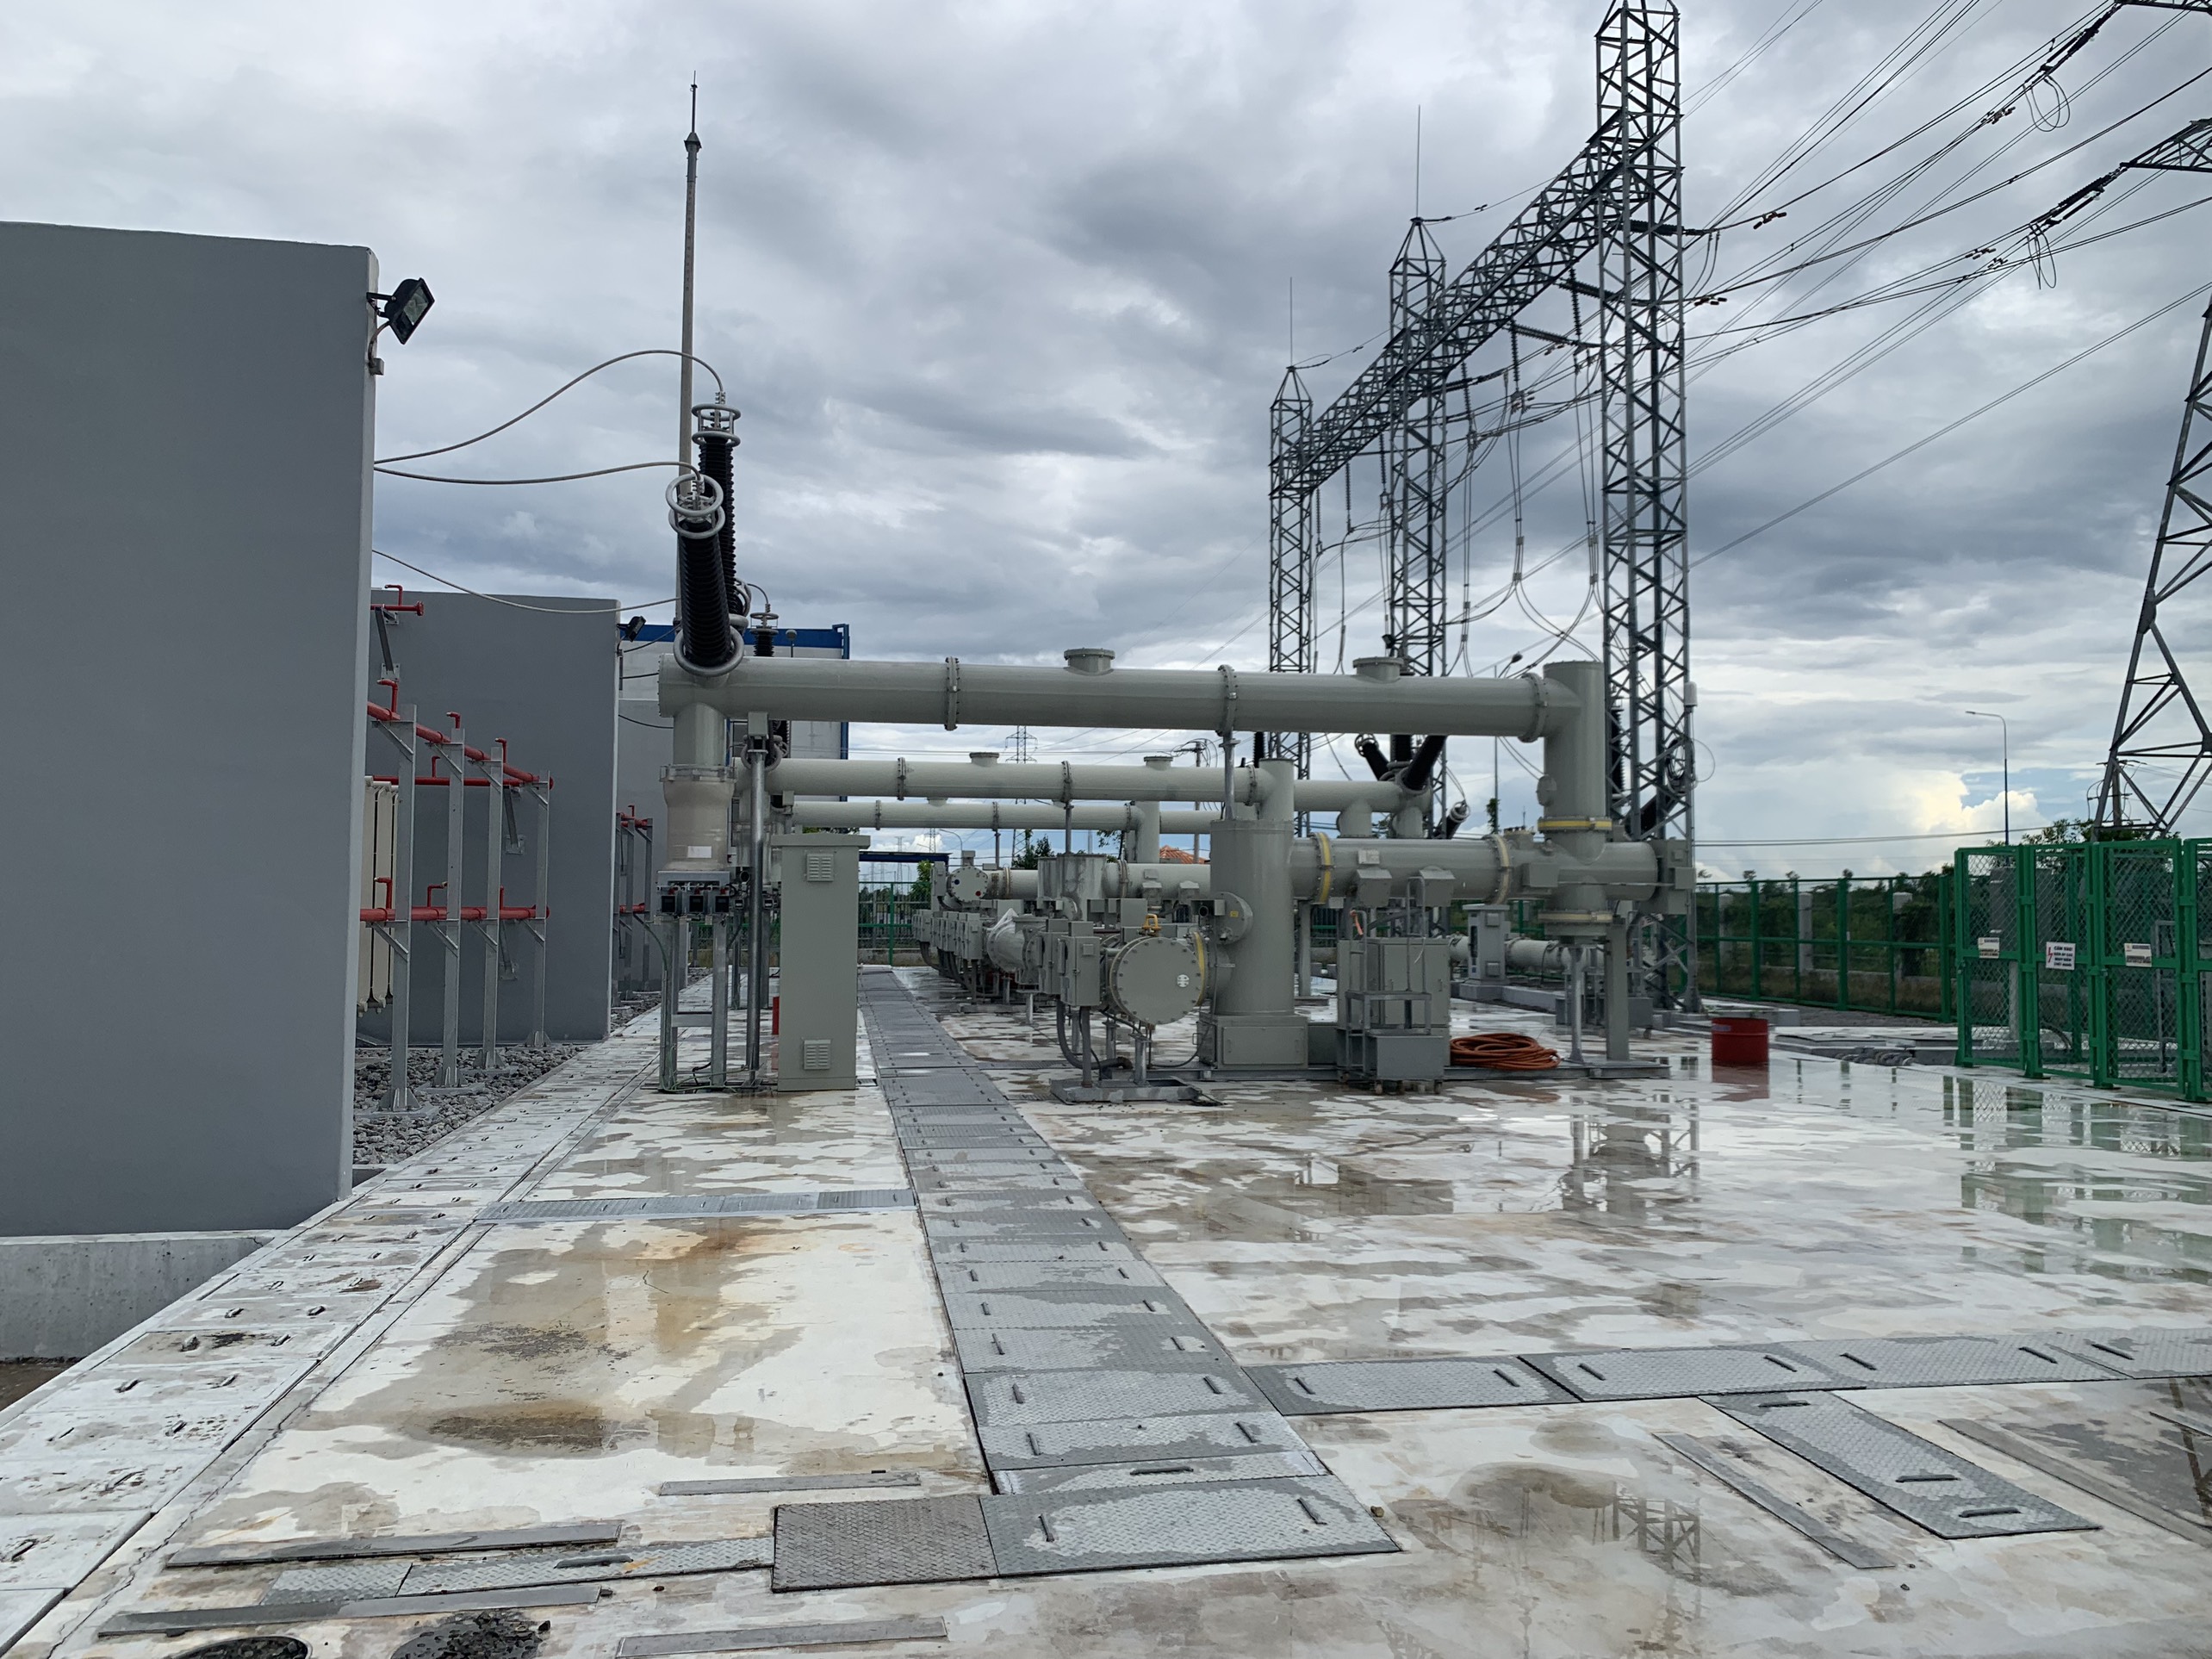 Kolon Industries Binh Duong KIB-2 PJT - 110kV substation